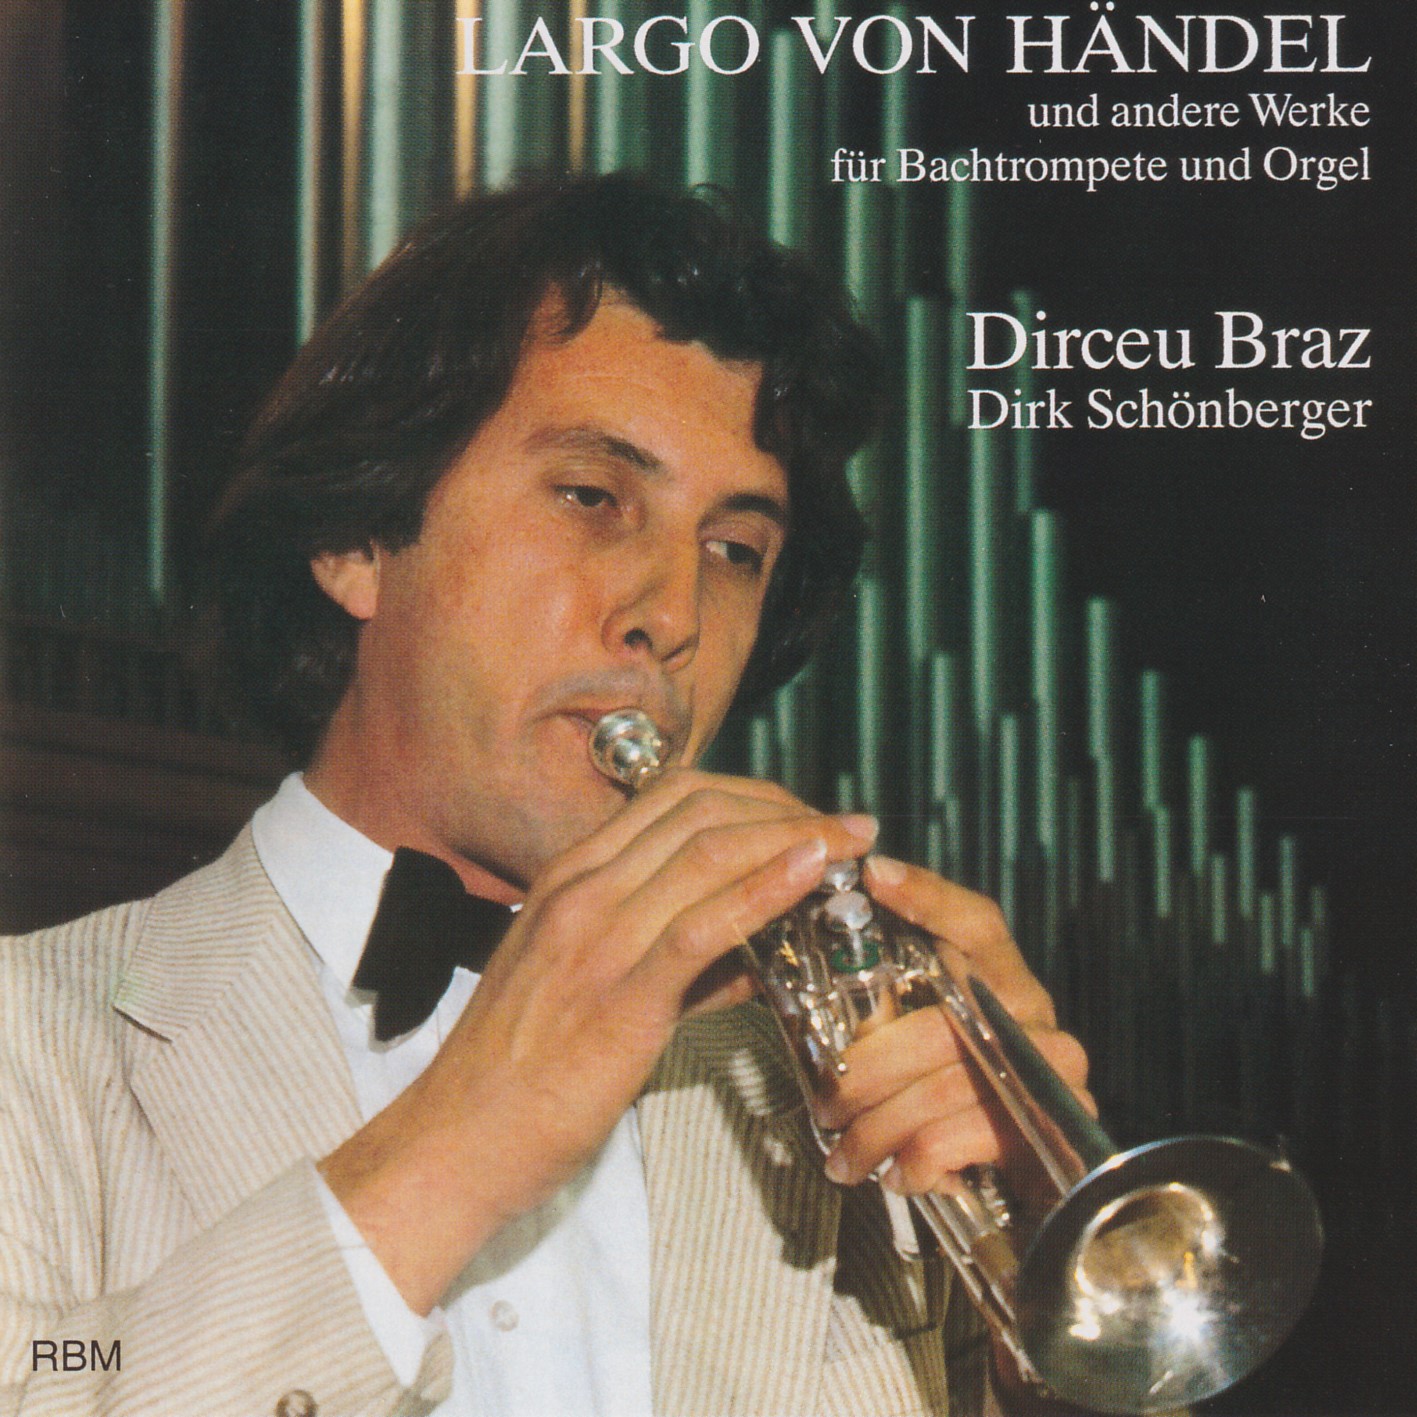 Largo von Händel - Dirceu Braz